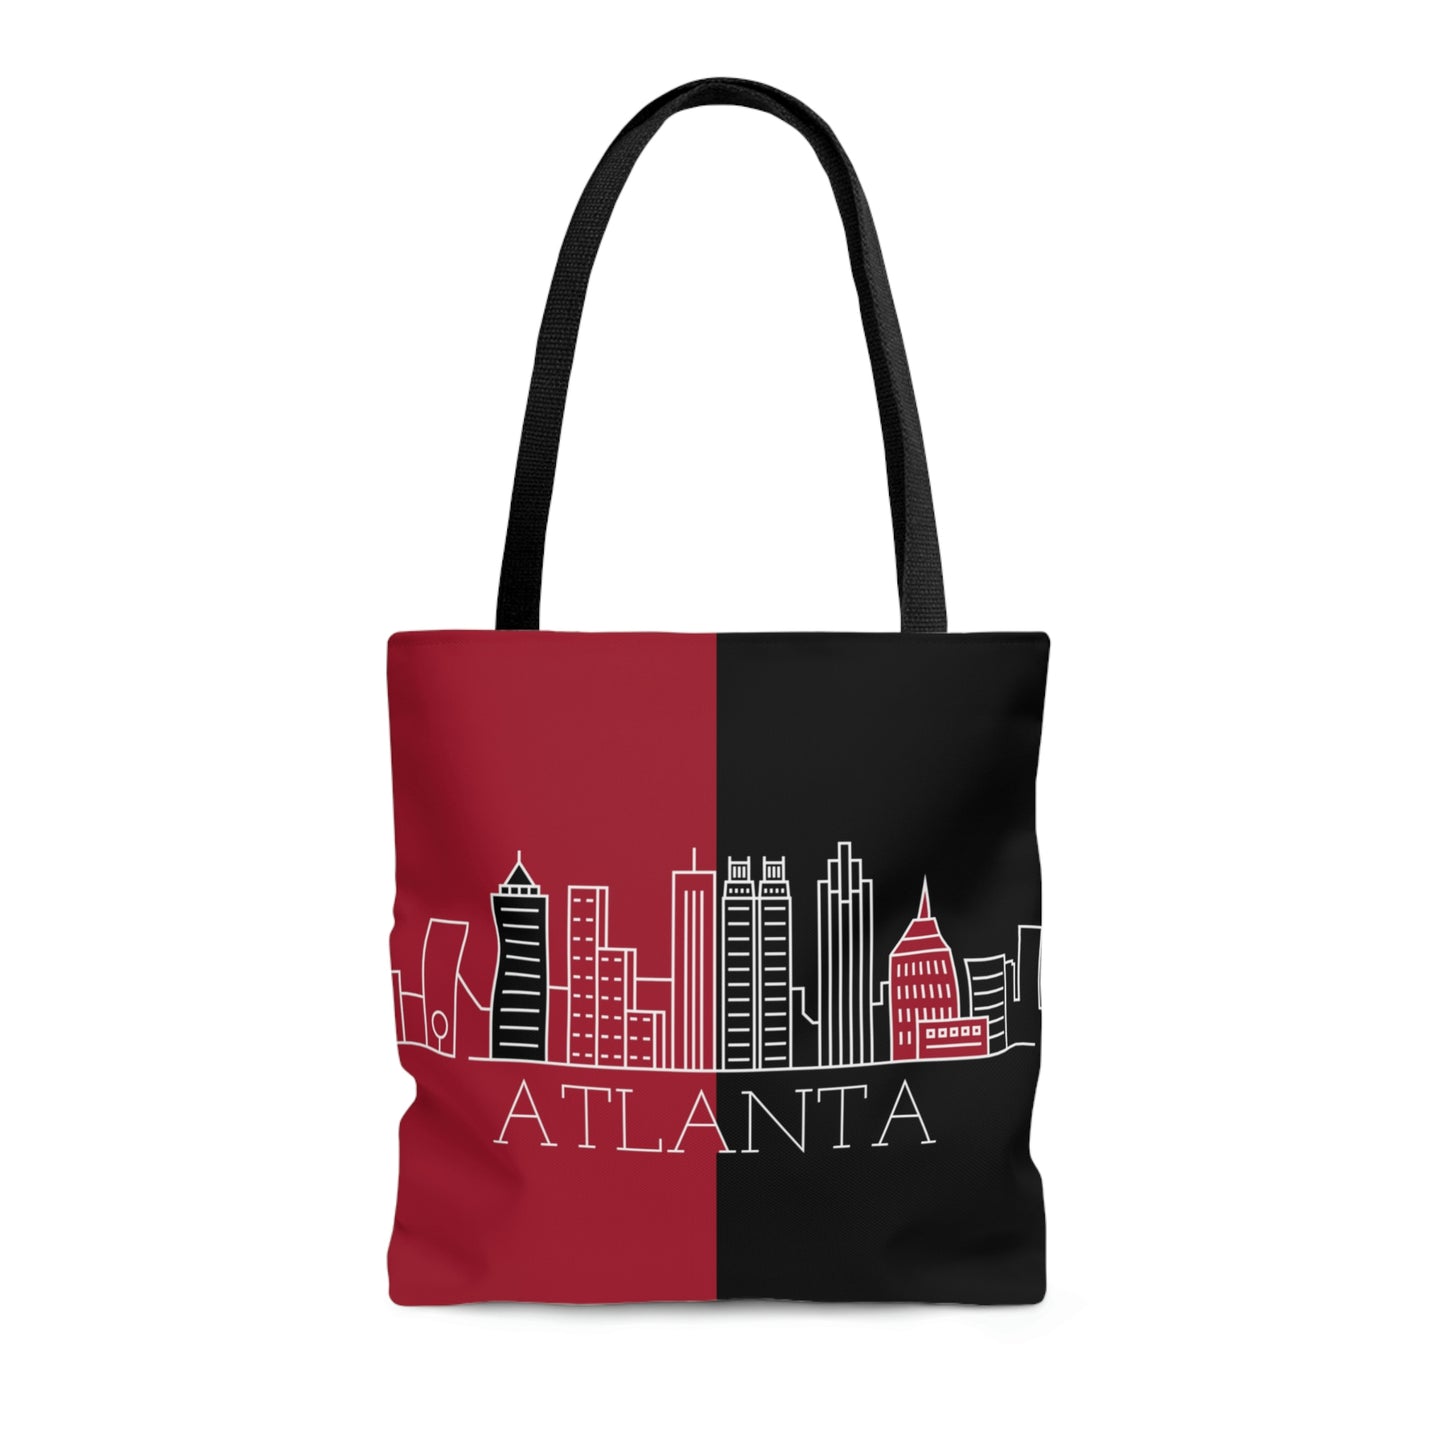 Atlanta - City series  - Tote Bag